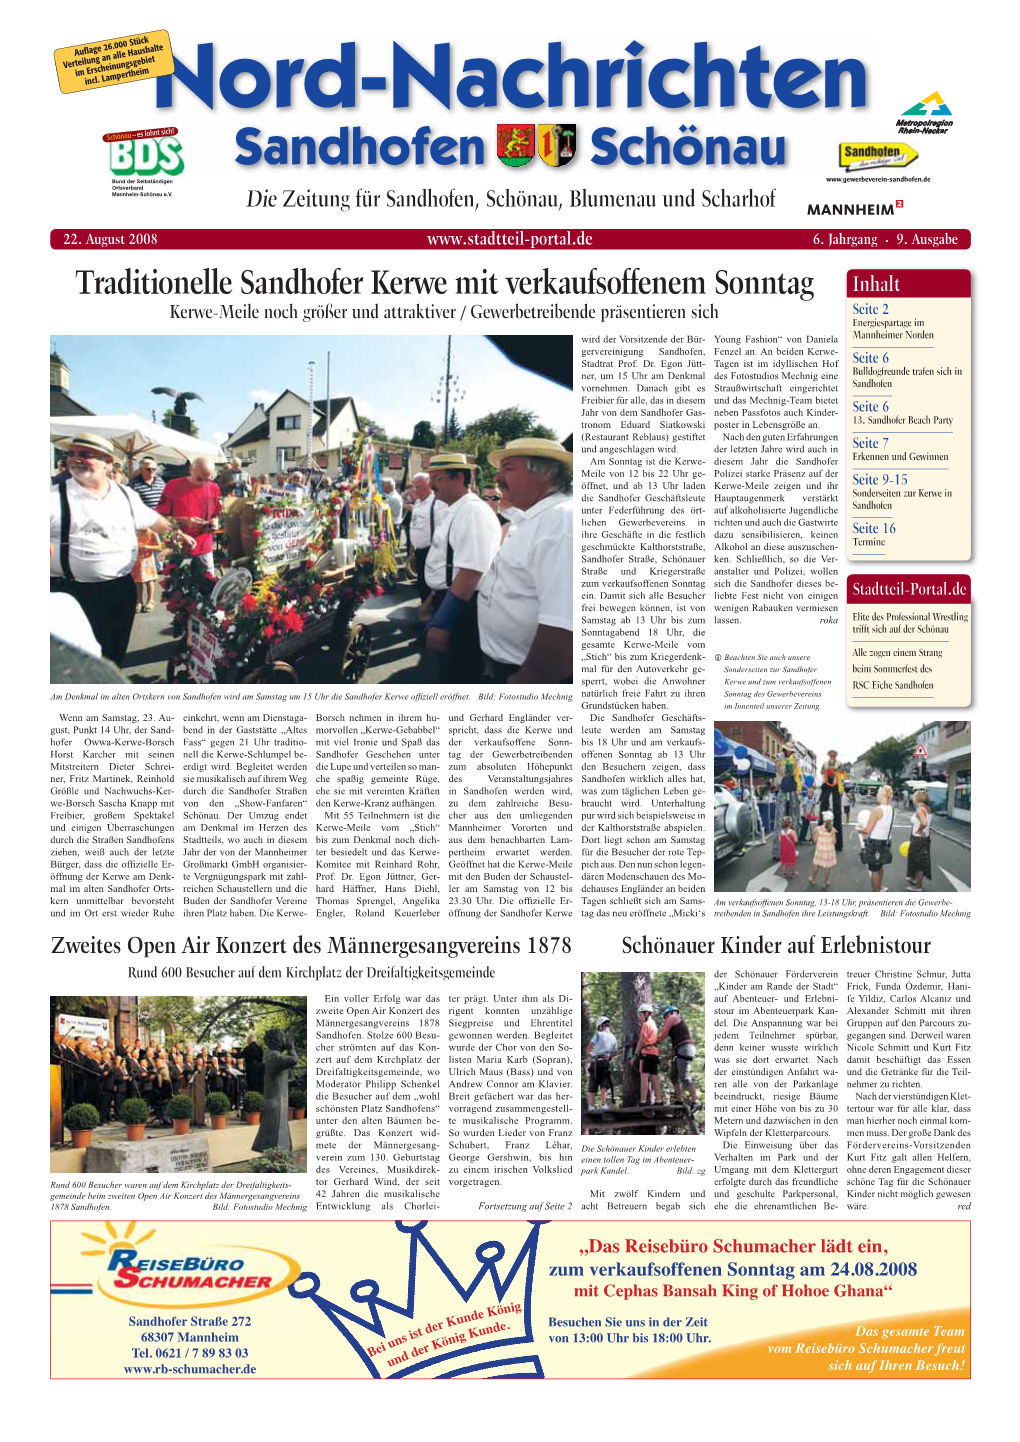 Nord-Nachrichten Sandhofen Schönau